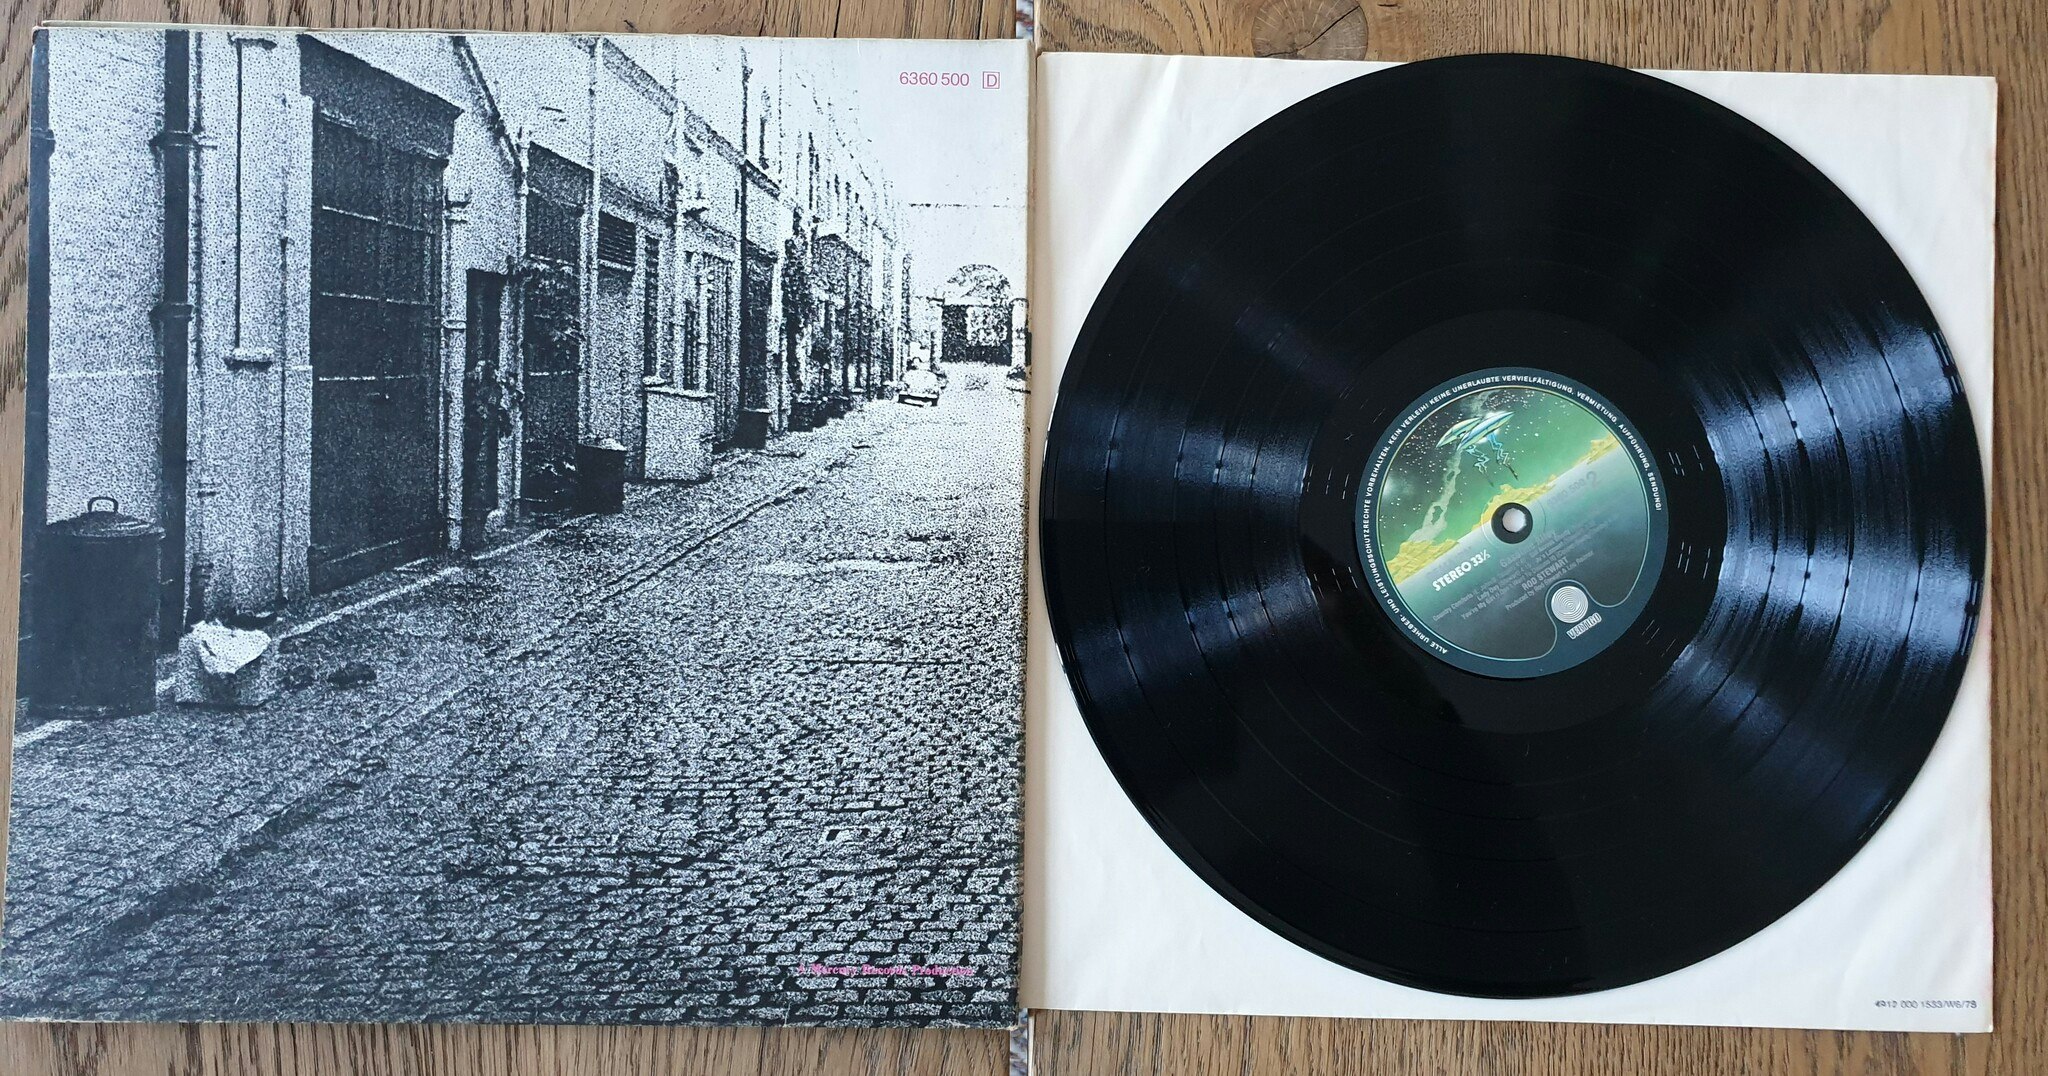 Rod Stewart, Gasoline alley. Vinyl LP